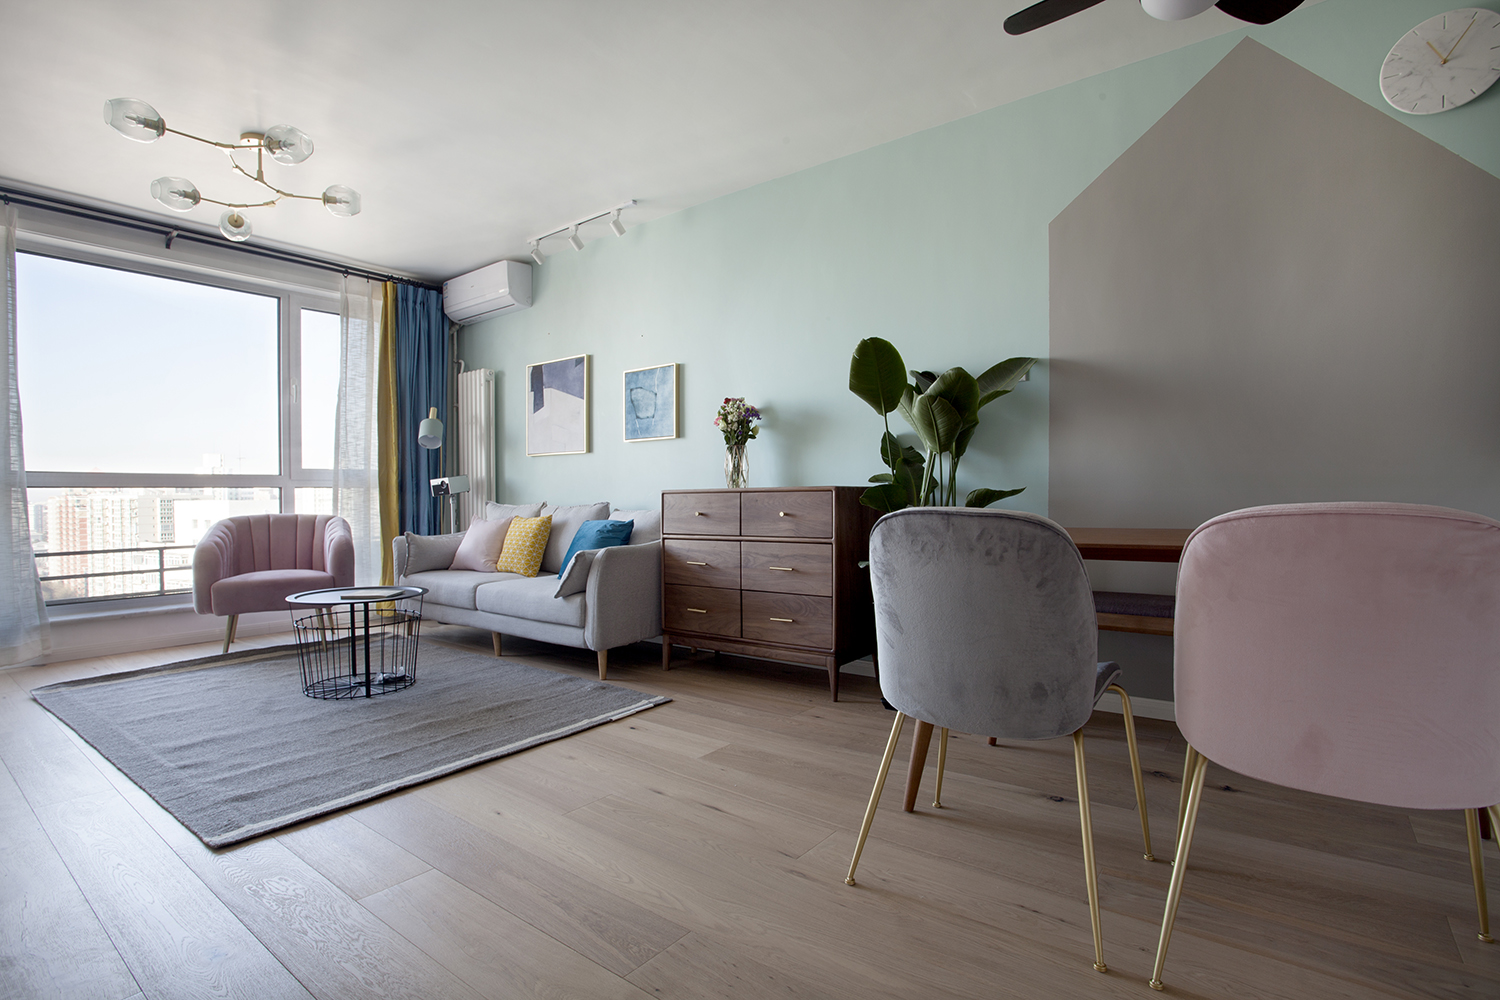 客厅以暖色系为主色调，灰色沙发搭配蓝黄抱枕，再配以粉色座椅，展现出北欧风格的治愈气息。